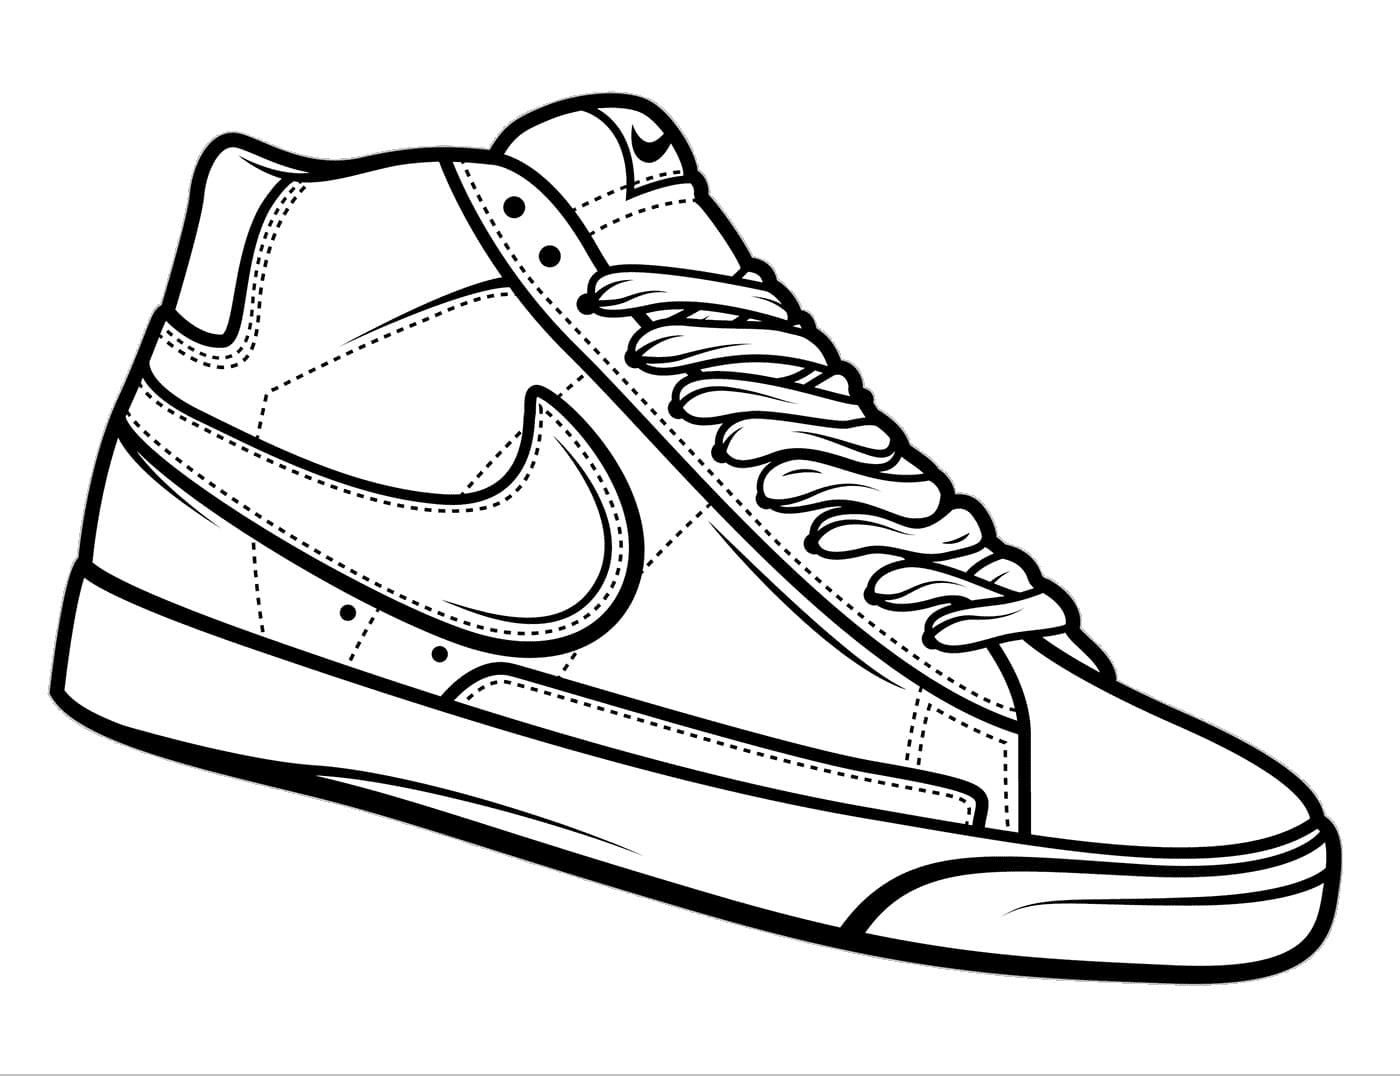 Imprimer la page de coloriage des chaussures Nike